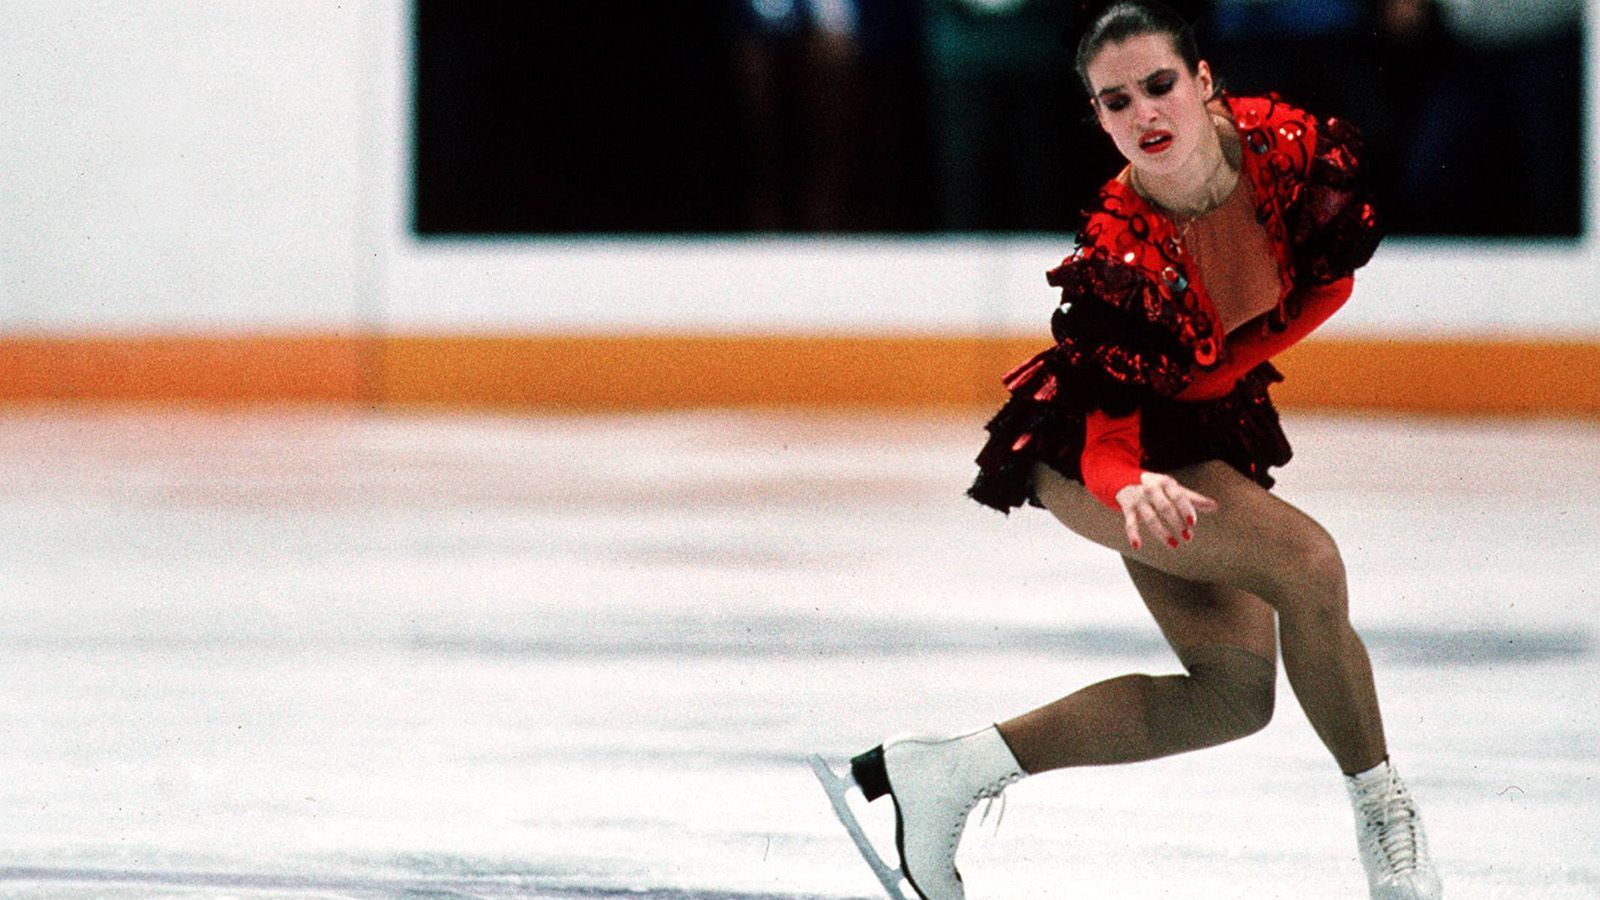 
                <strong>Kati Witt wiederholt Olympia-Sieg</strong><br>
                Sie ist "das schönste Gesicht des Sozialismus". 1988 verzaubert Katarina Witt bei den Olympischen Winterspielen von Calgary die Welt mit ihrer Kür zu "Carmen". Sie wiederholt damit ihren Olympiasieg von 1984 in Sarajewo.
              